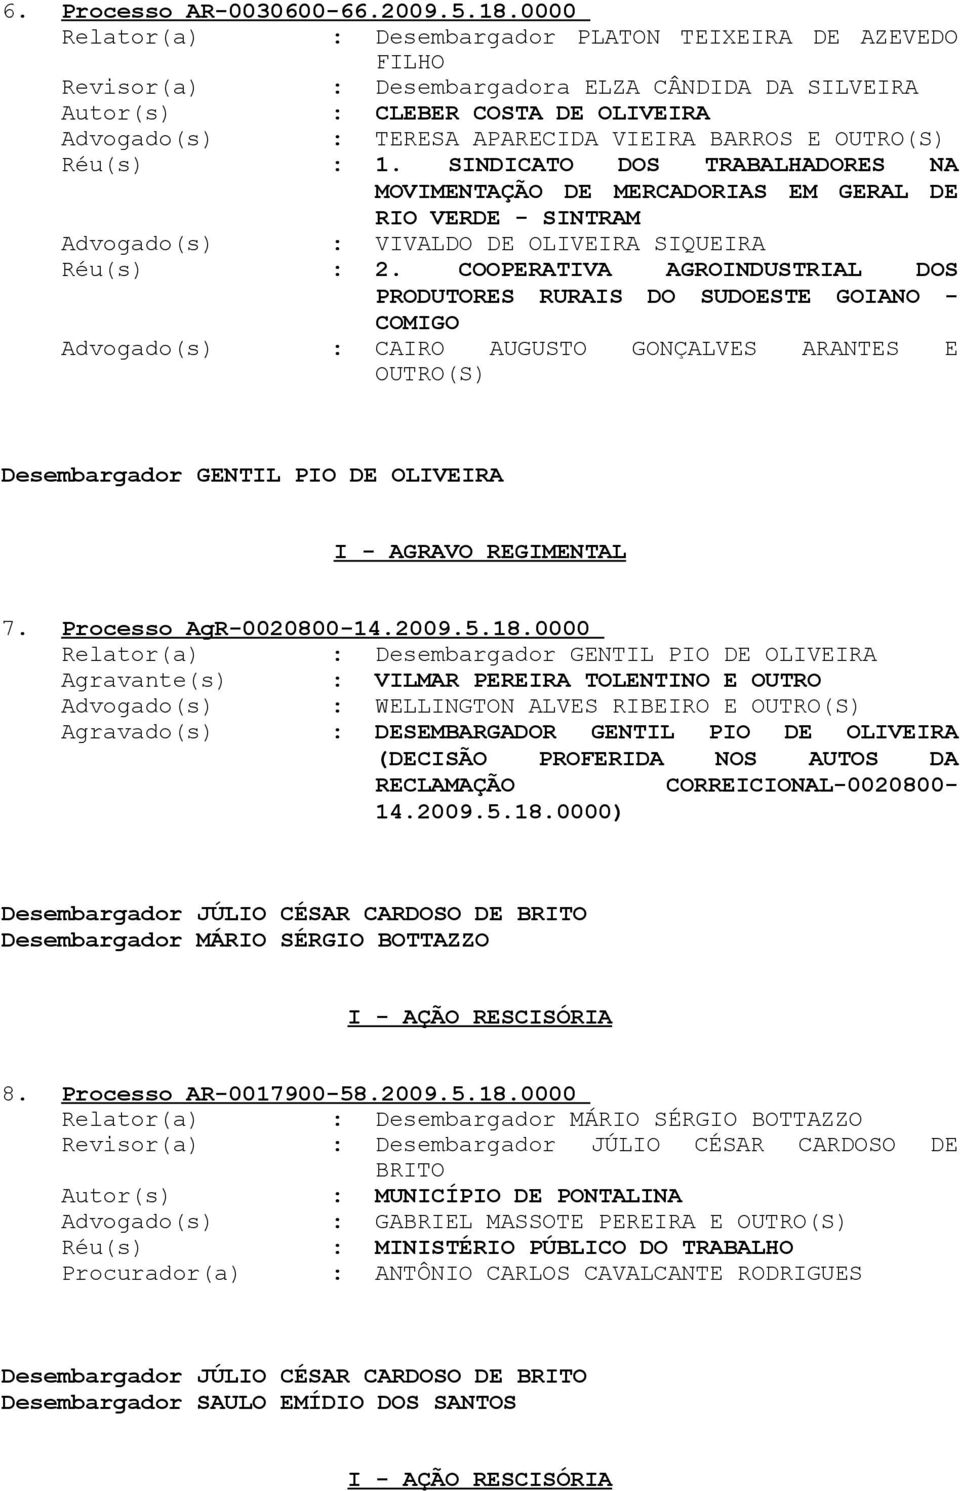 SINDICATO DOS TRABALHADORES NA MOVIMENTAÇÃO DE MERCADORIAS EM GERAL DE RIO VERDE - SINTRAM Advogado(s) : VIVALDO DE OLIVEIRA SIQUEIRA Réu(s) : 2.